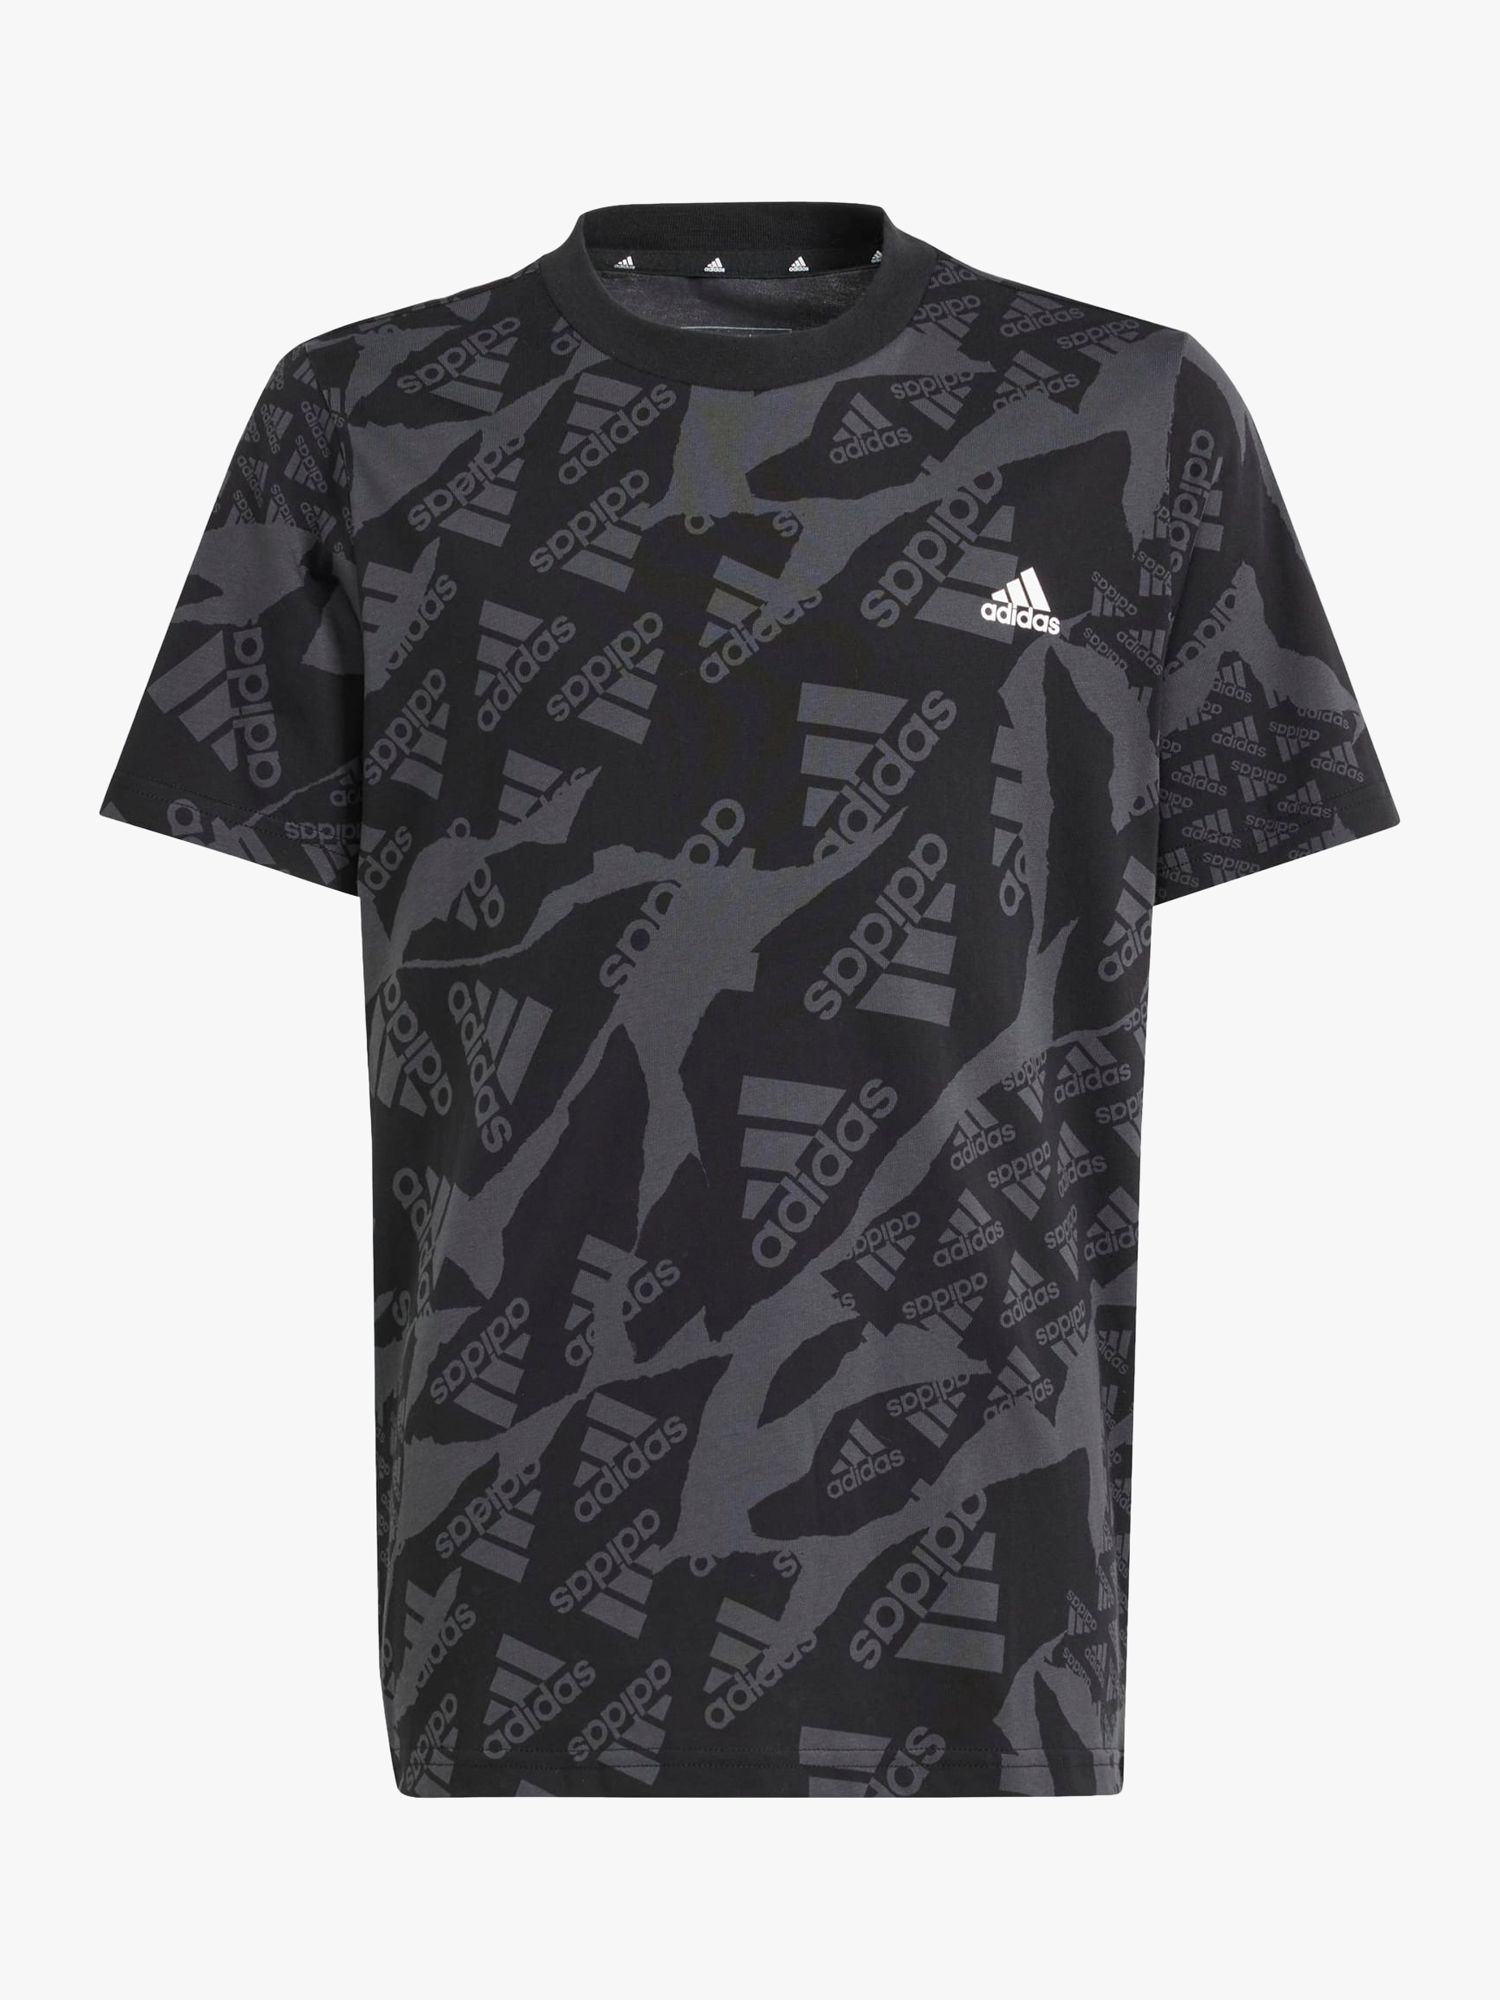 adidas Kids' Camo Logo T-Shirt, Camo/Black at John Lewis & Partners